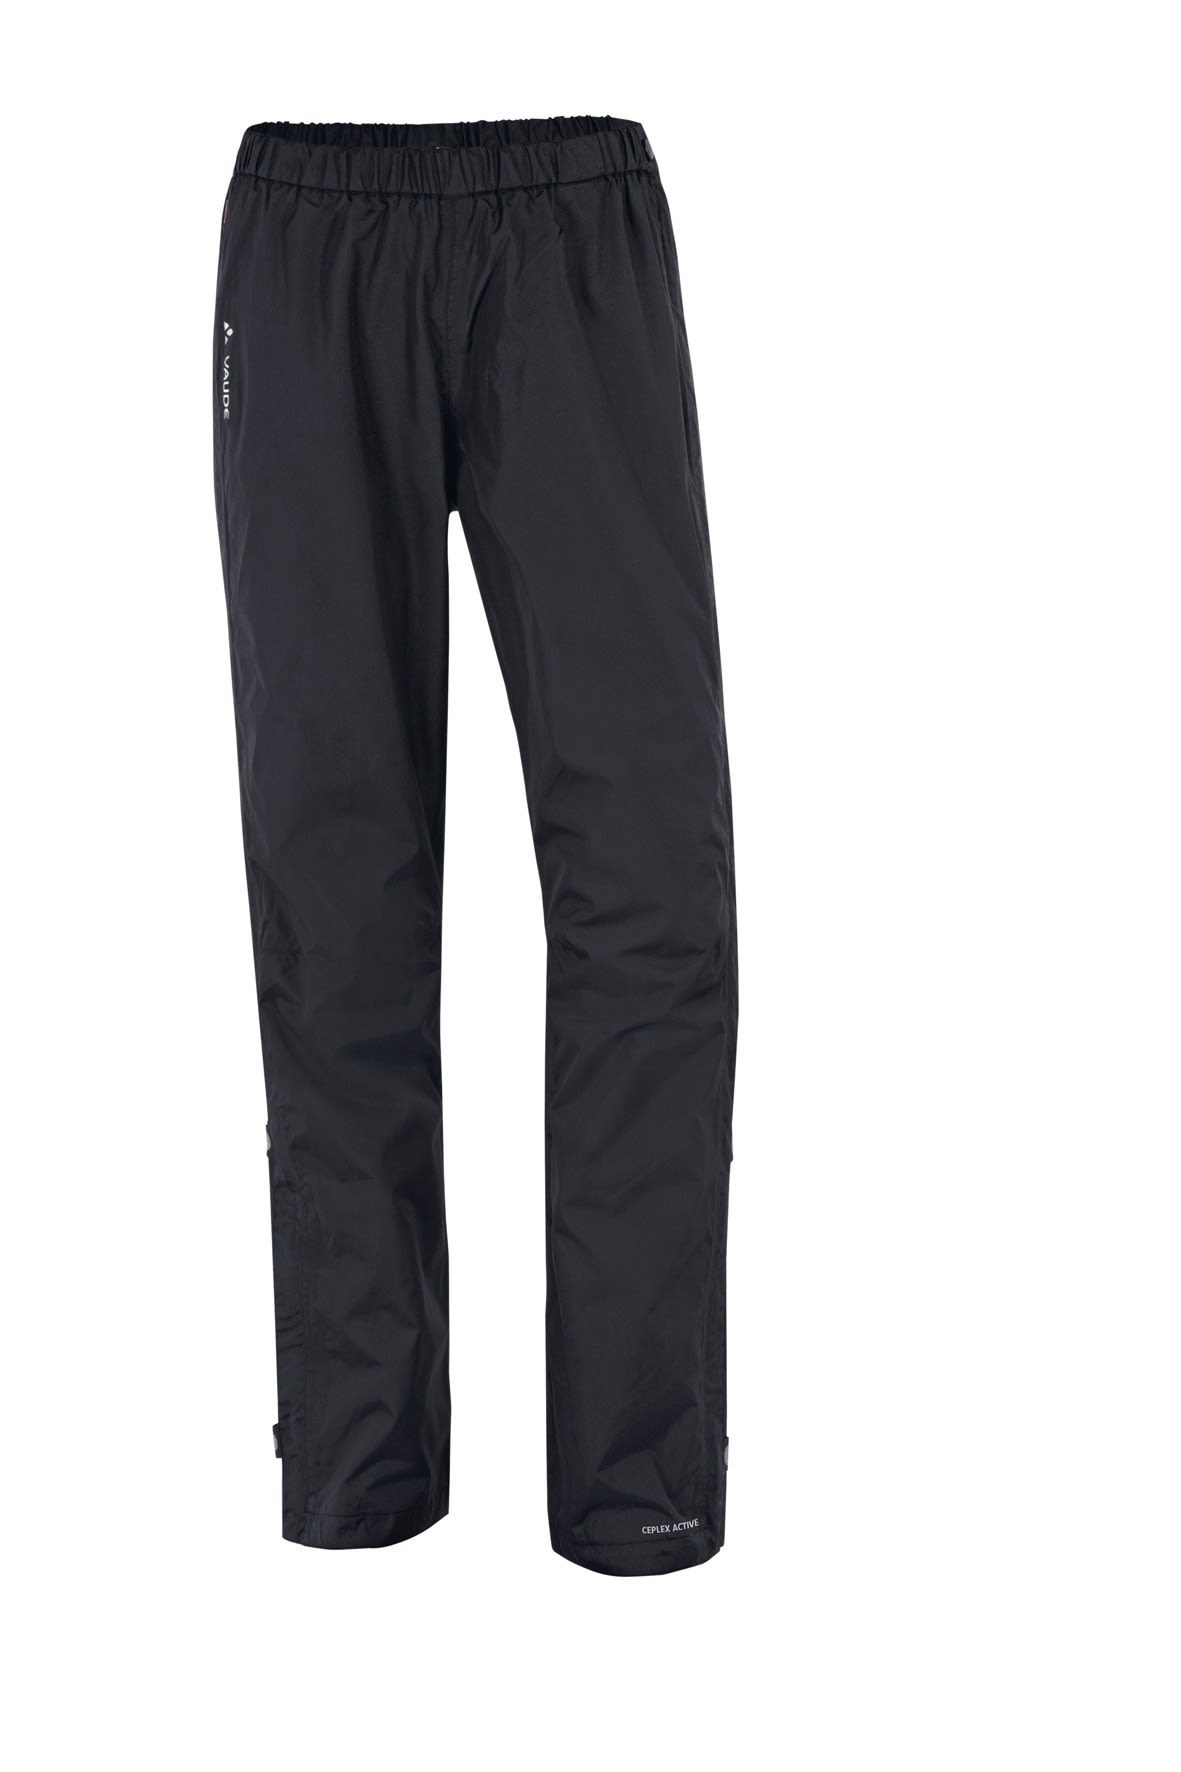 Vaude Fluid Full-Zip Pants Schwarz- Female Hosen- Grsse 46 - Short - Farbe Black